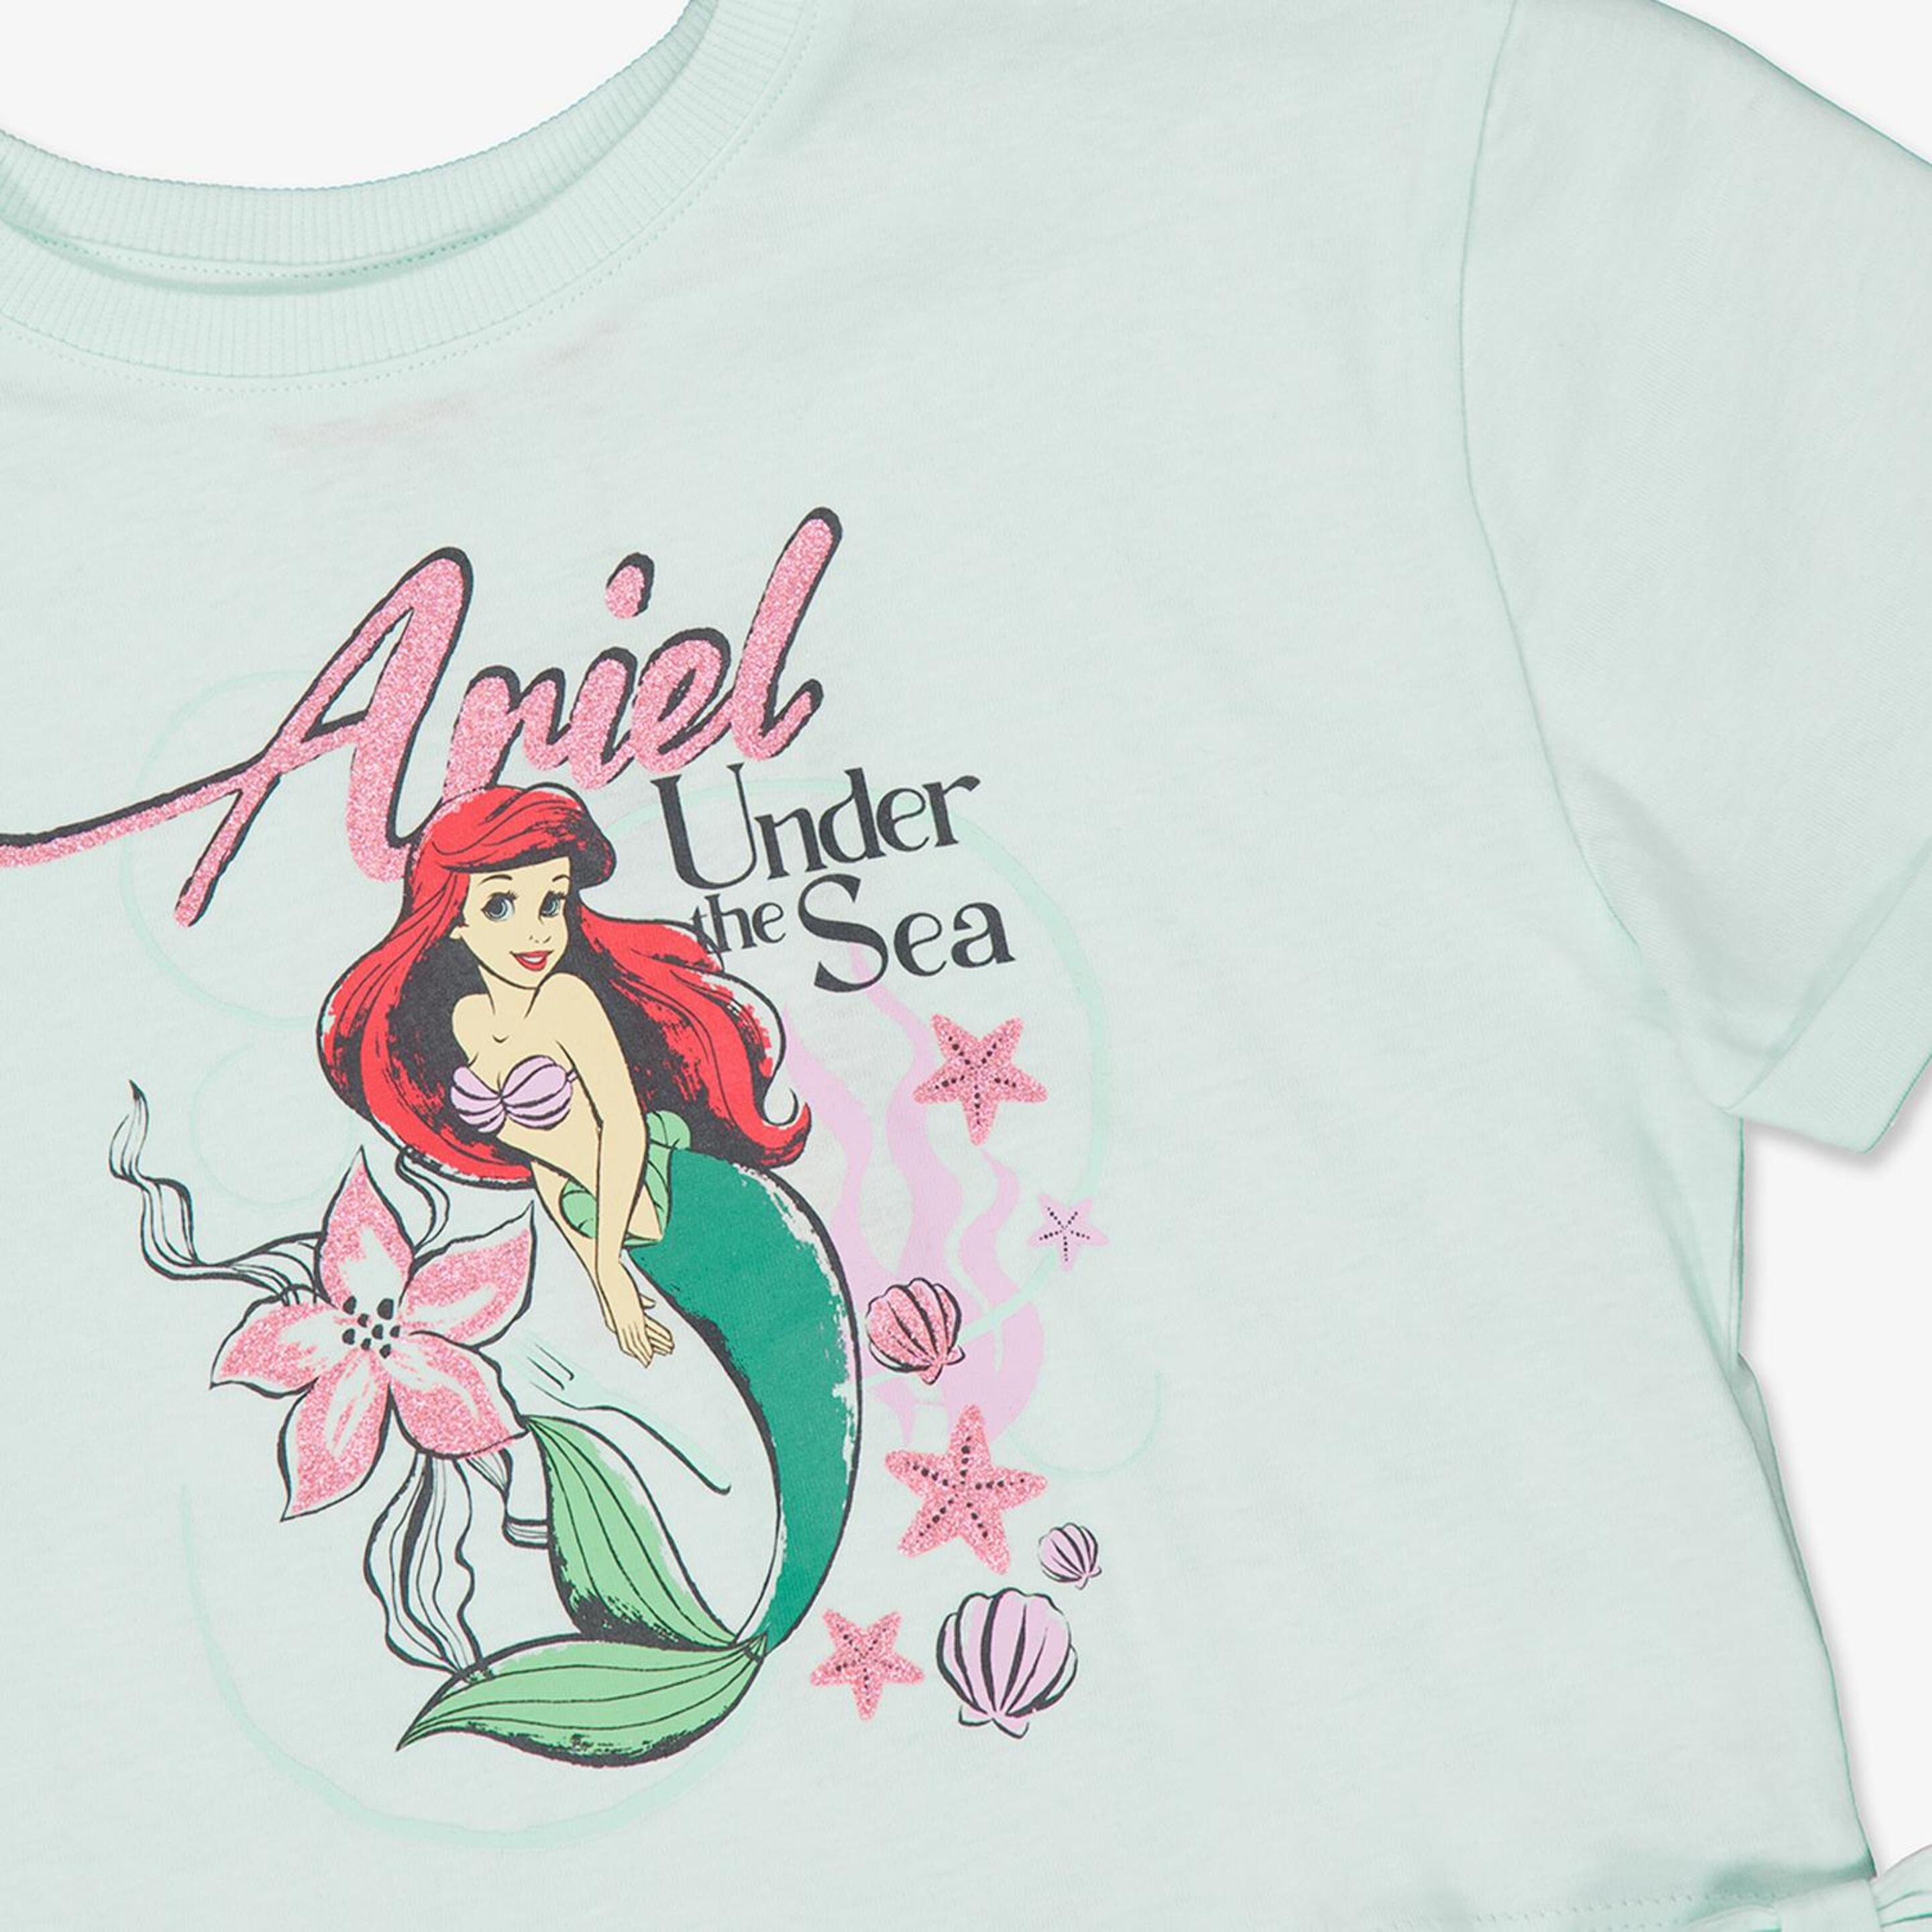 Camiseta Ariel